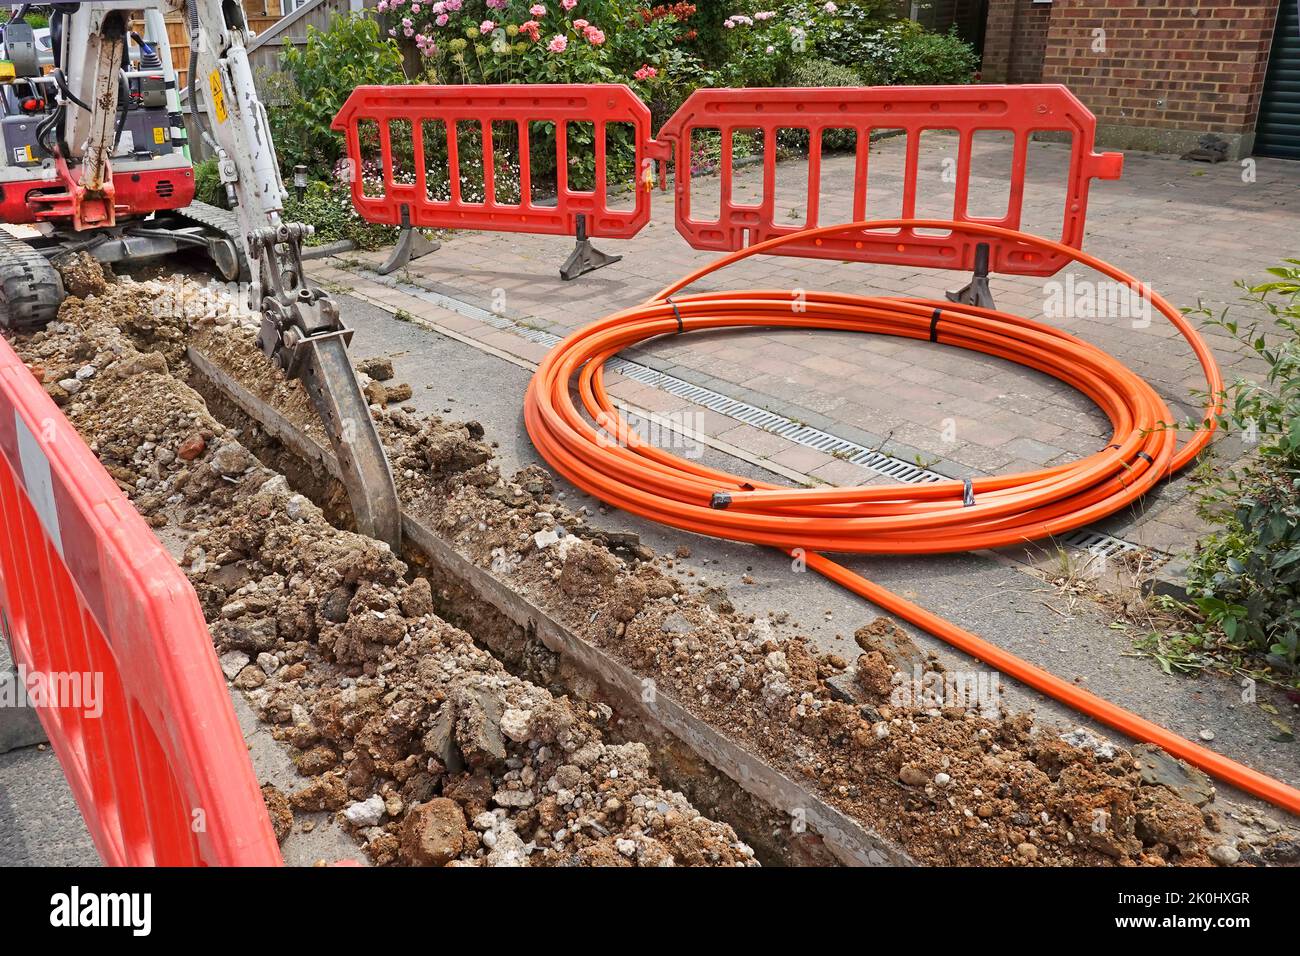 Minipelle excavatrice pour creusement de tranchées machine canal étroit dans le pavage pour câble à large bande en fibre orange allée fermée en spirale Angleterre Royaume-Uni Banque D'Images